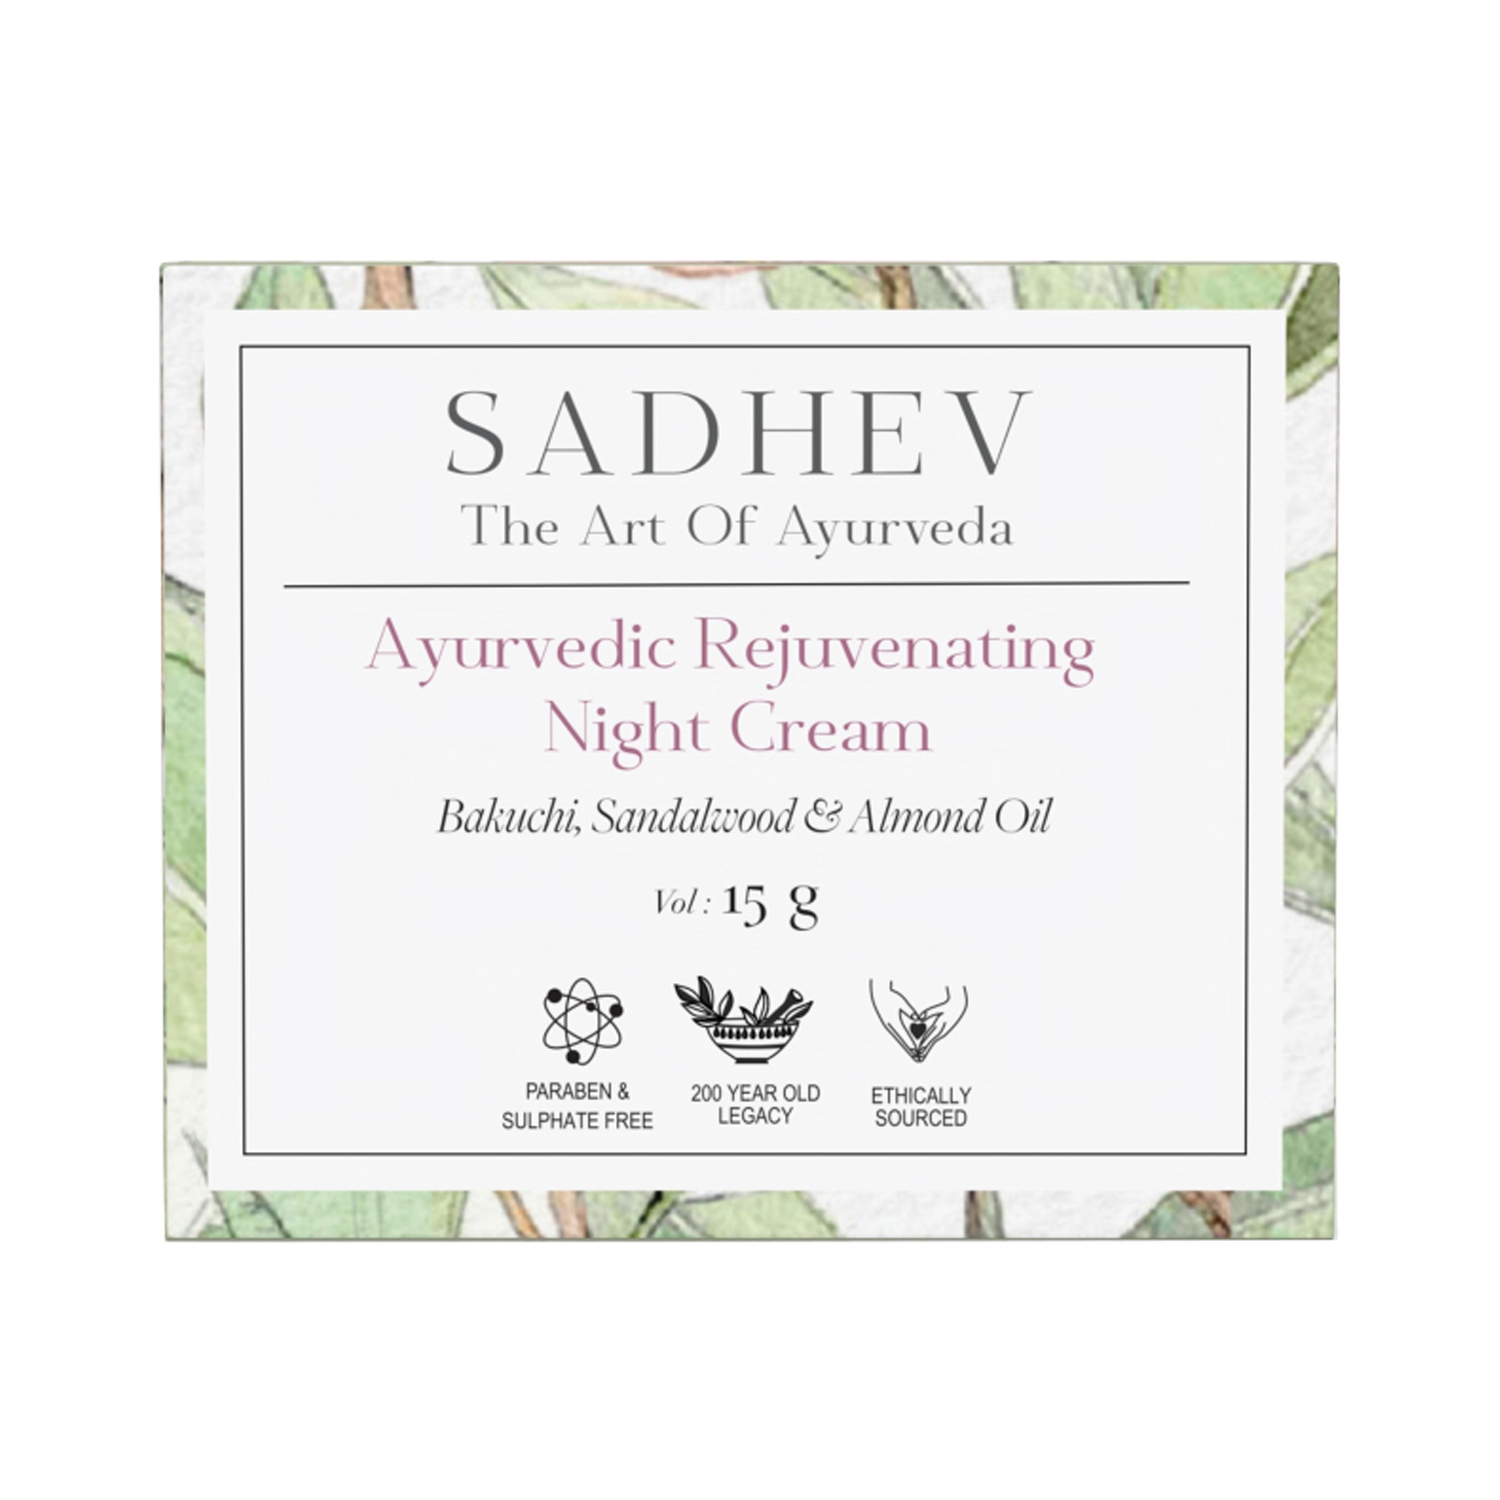 Sadhev Ayurvedic Rejuvenating Night Cream (15g)